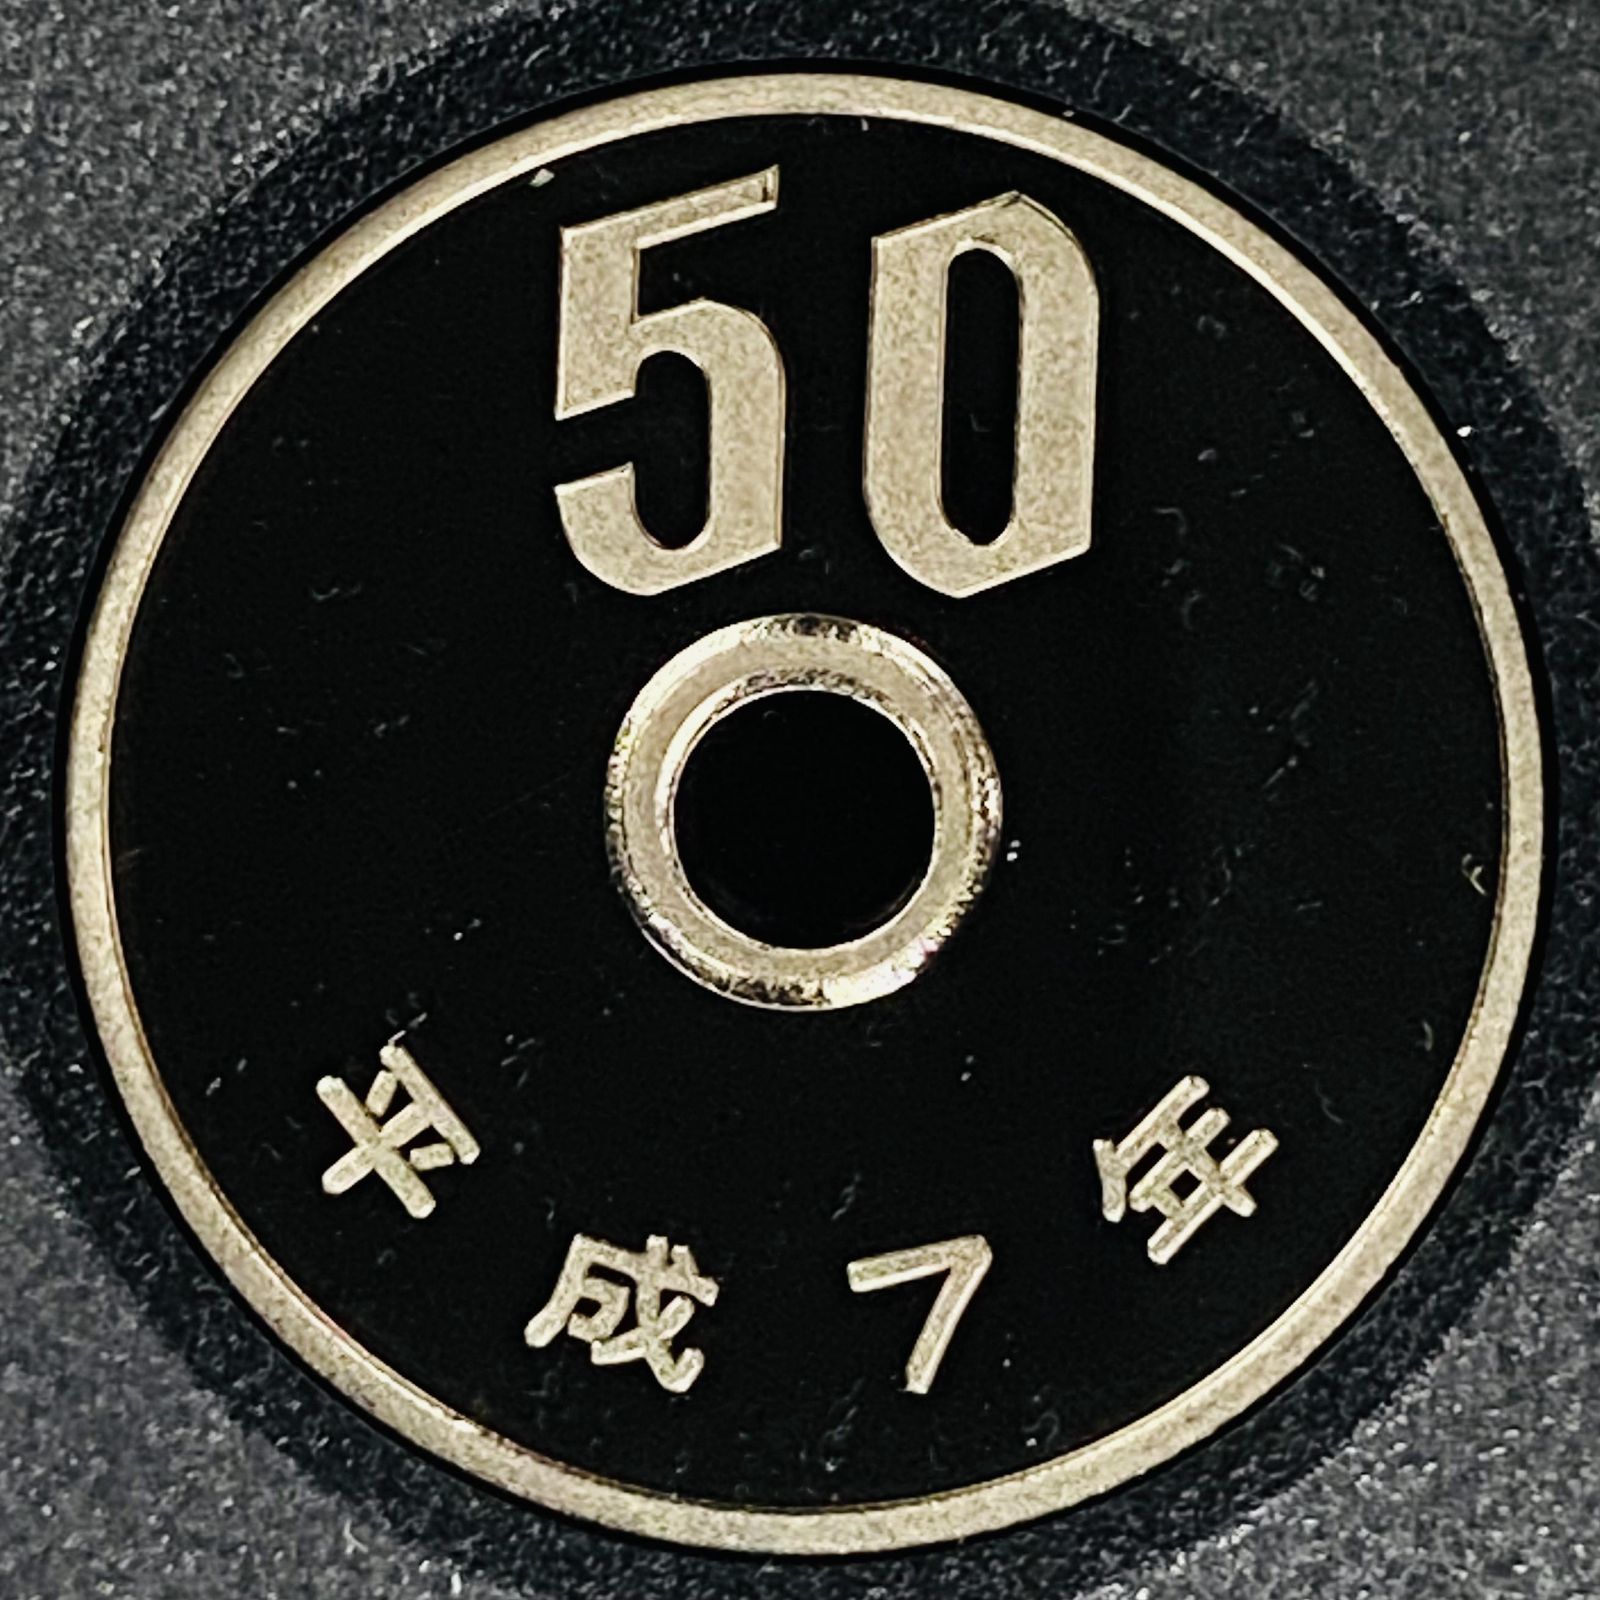 プルーフ貨幣セット 1995年 平成7年 額面666円 年銘板有 全揃い 通常